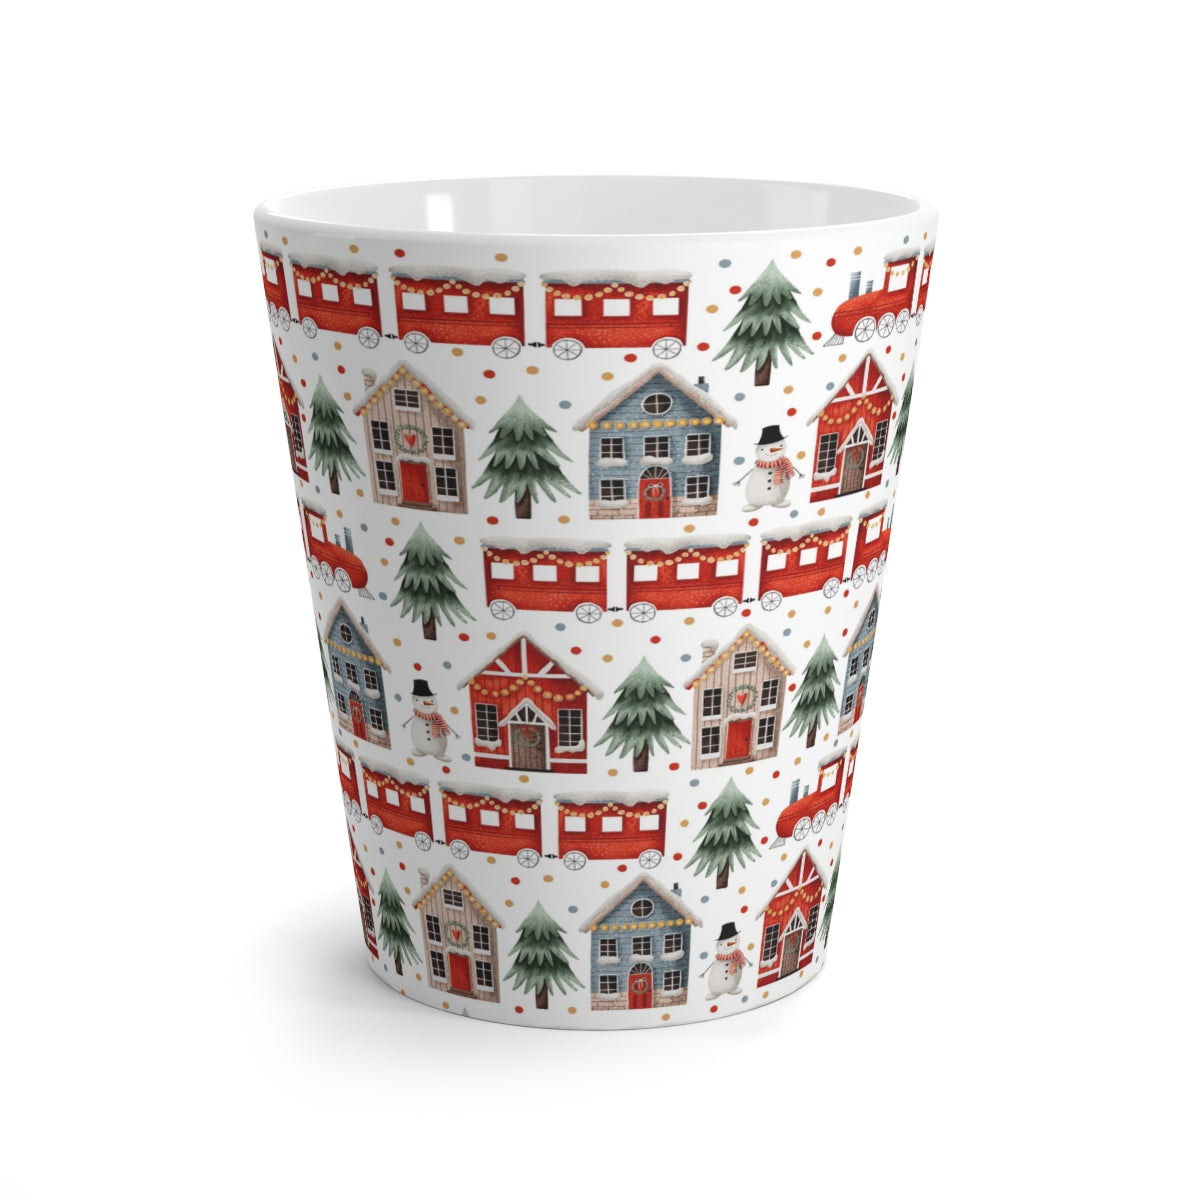 Christmas Trains and Houses Latte Mug